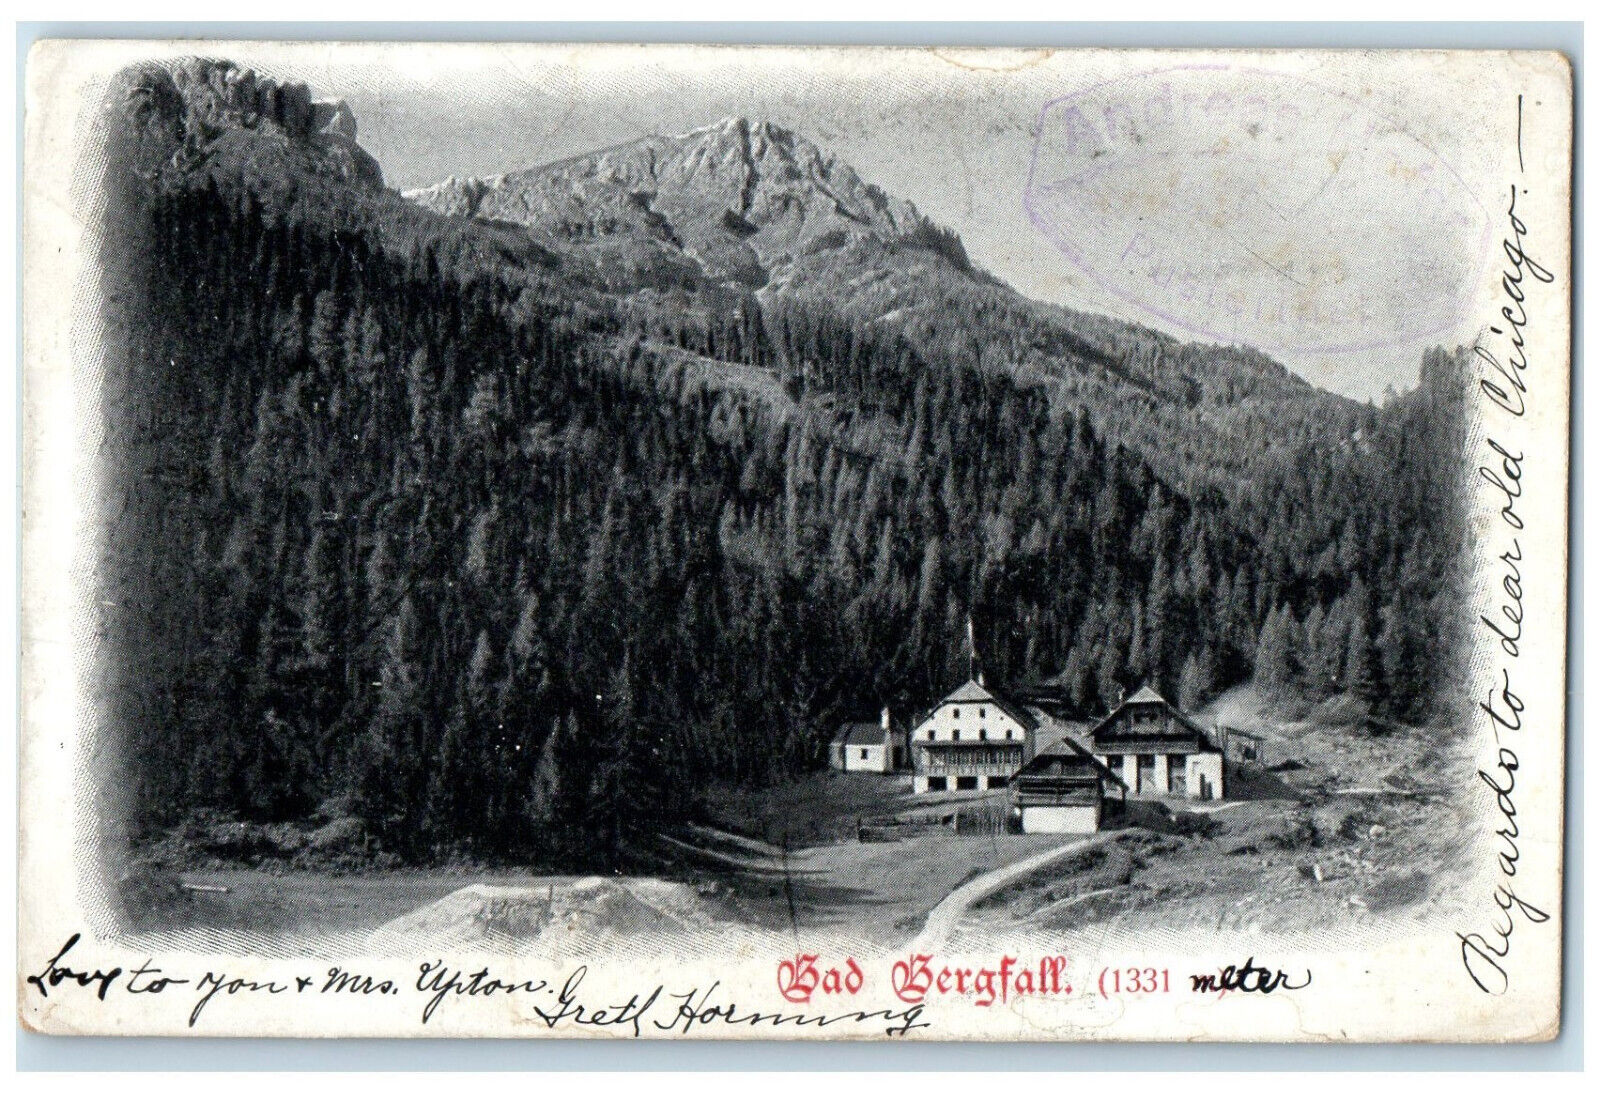 1910 Scene at Bad Bergfall Valdaora Bolzano Italy Posted Antique Postcard